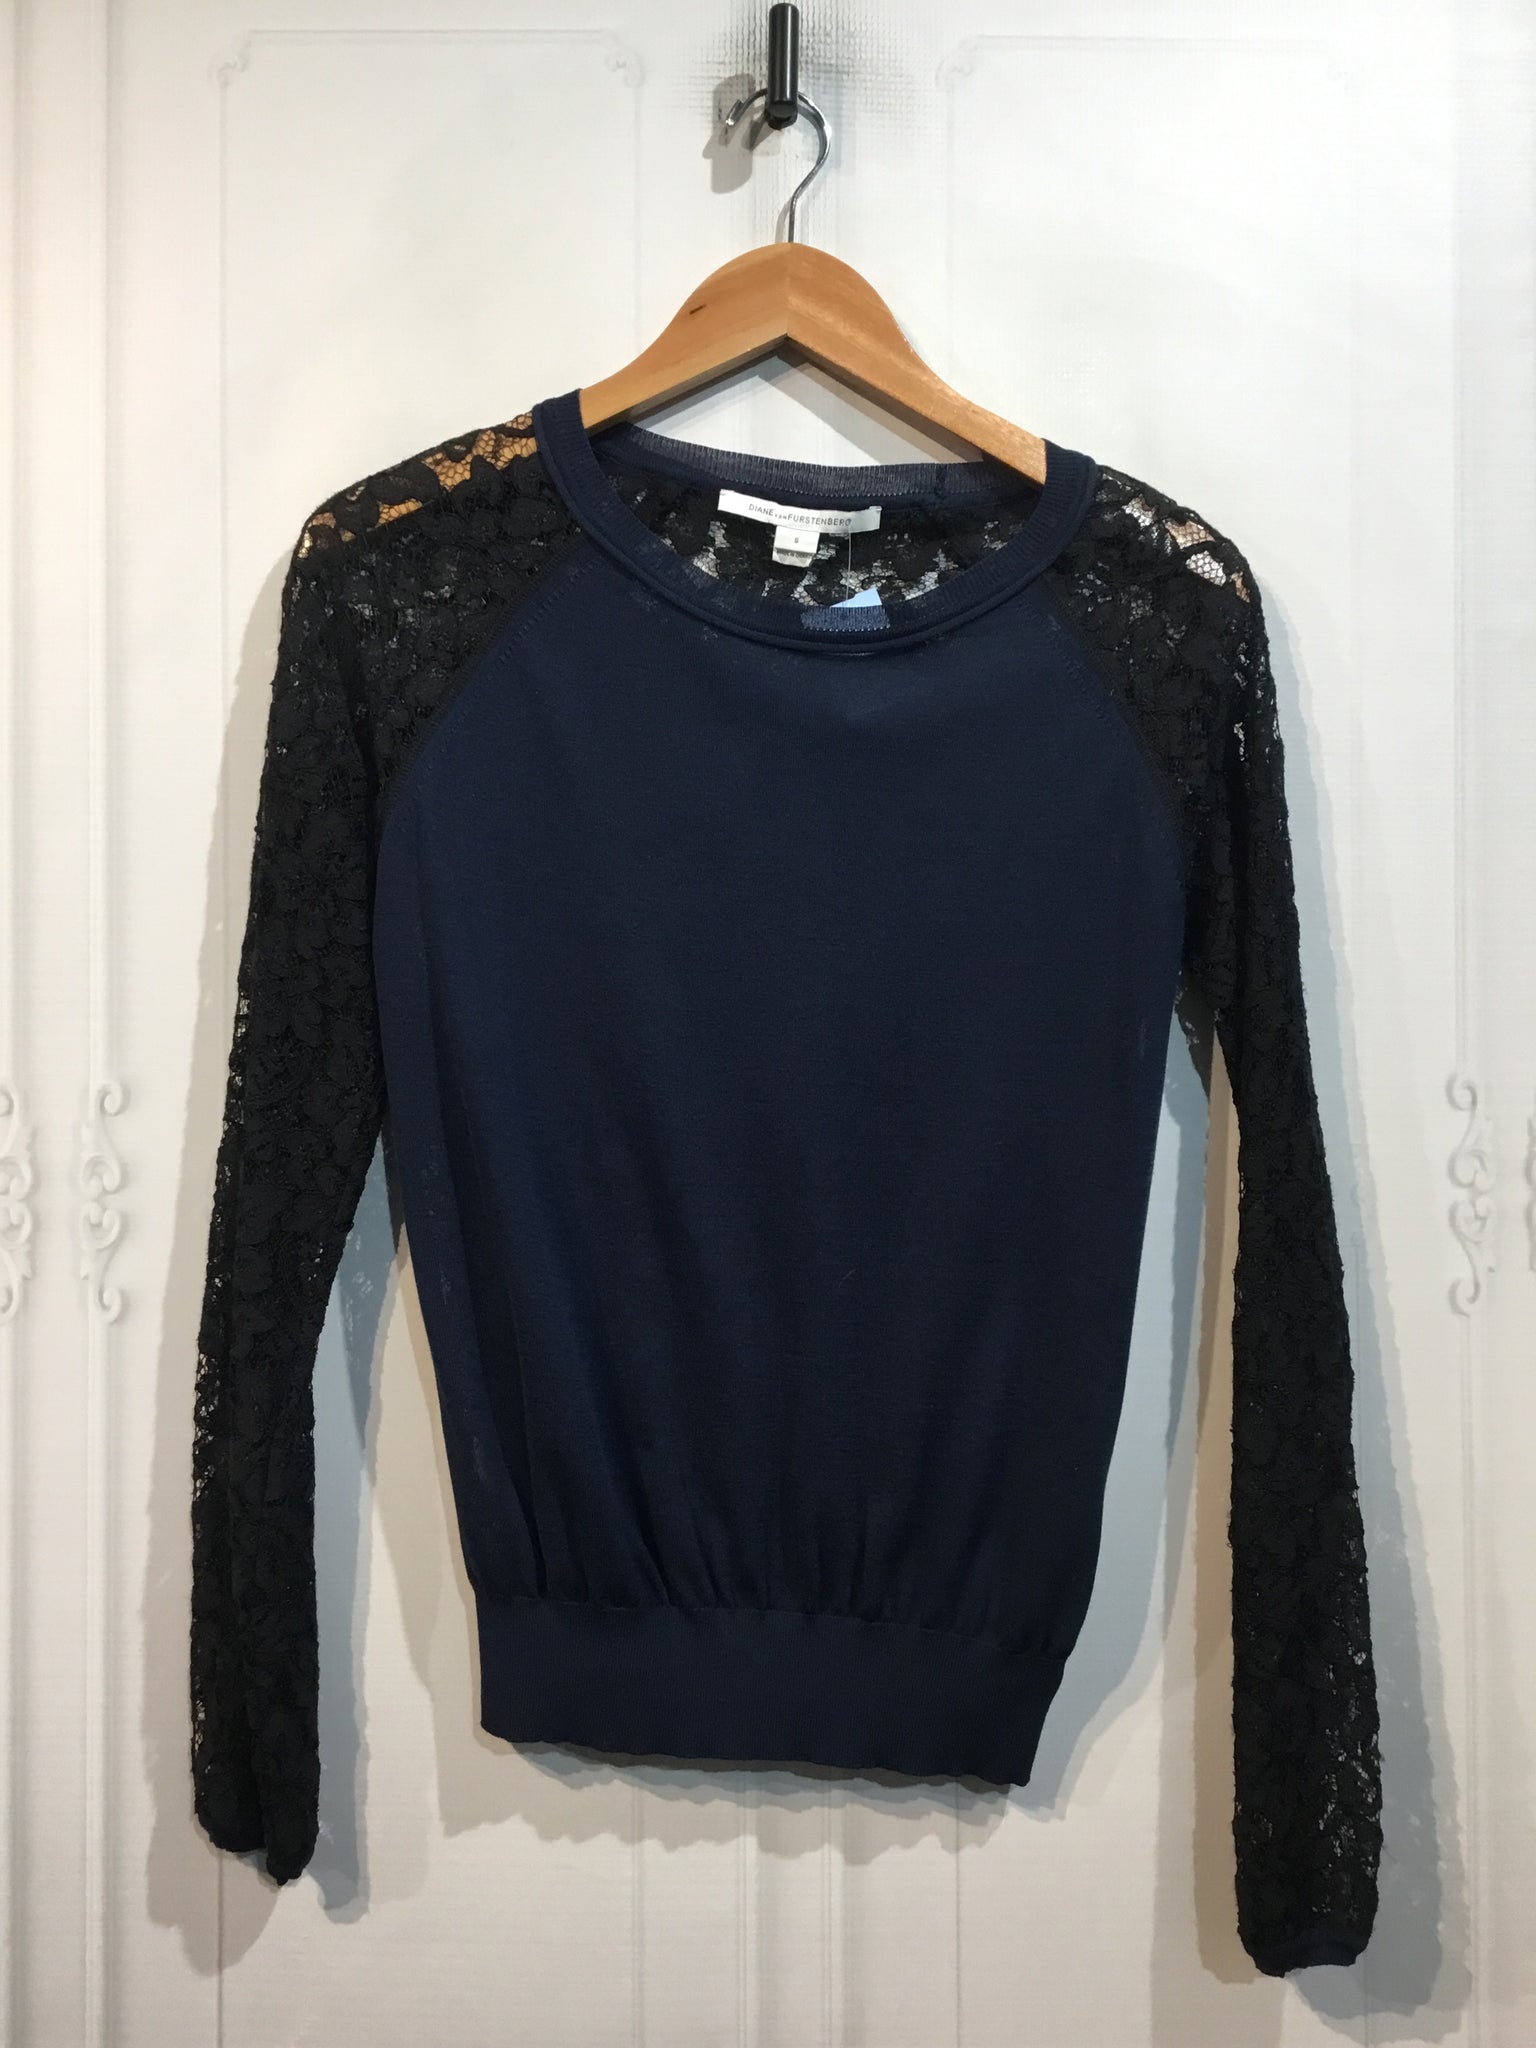 Diane vonFurstenberg Size S/4-6 Navy & Black Sweater